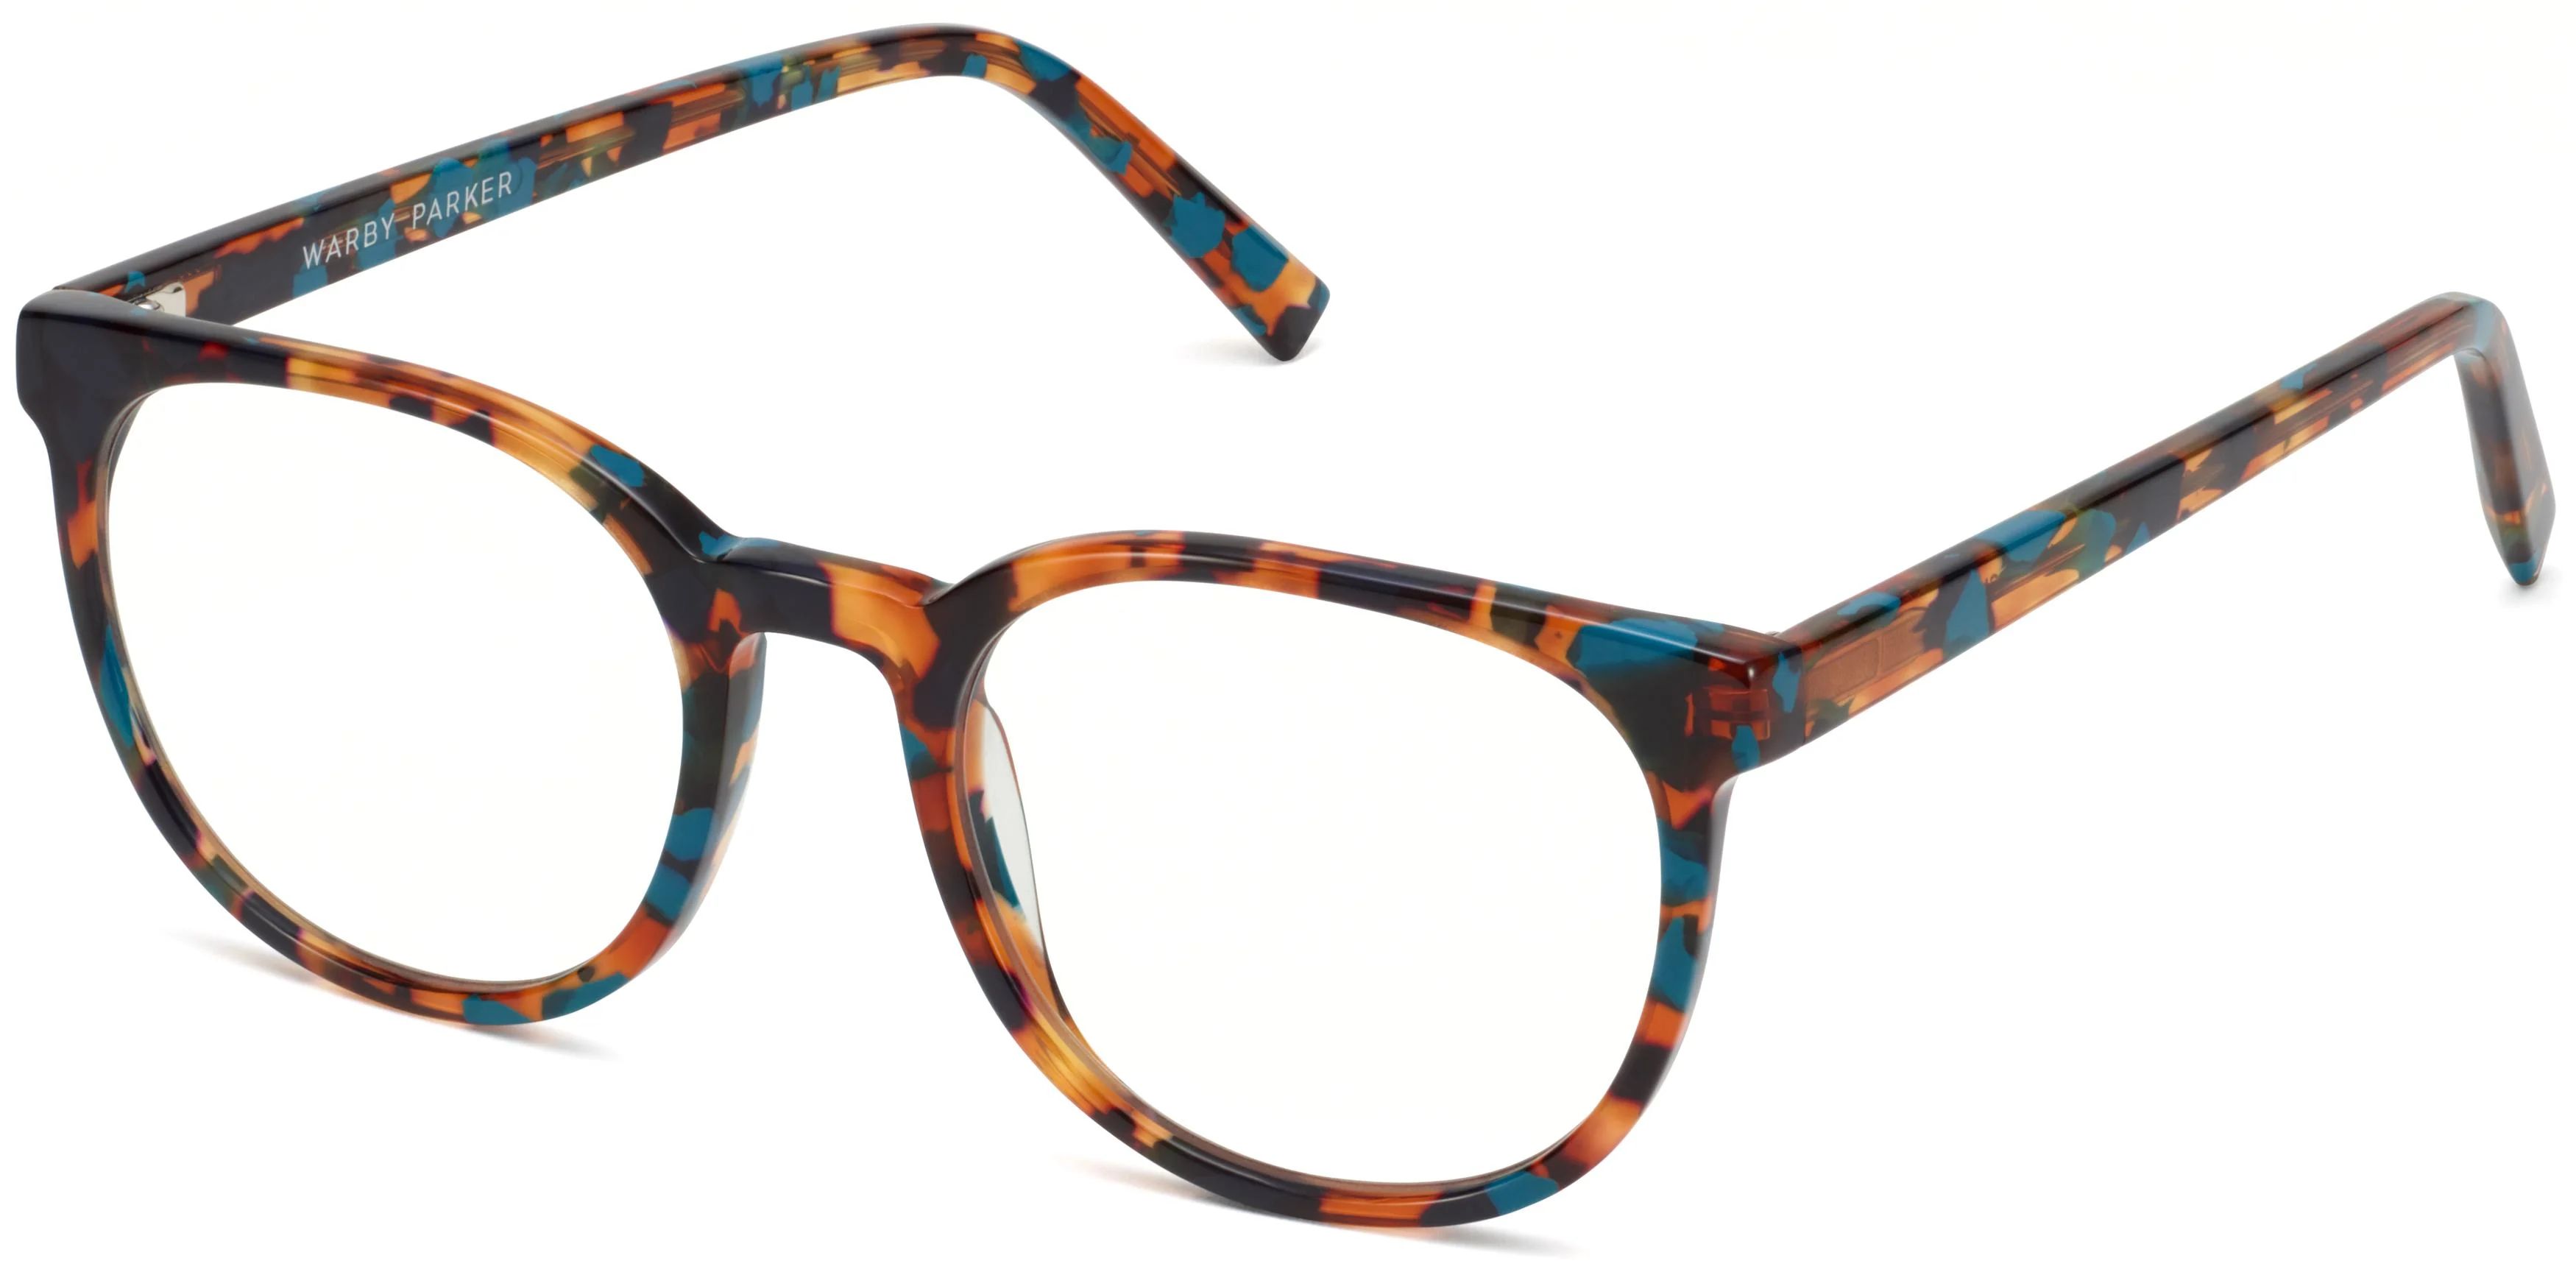 Gillian Eyeglasses in Black Oak Tortoise | Warby Parker | Warby Parker (US)